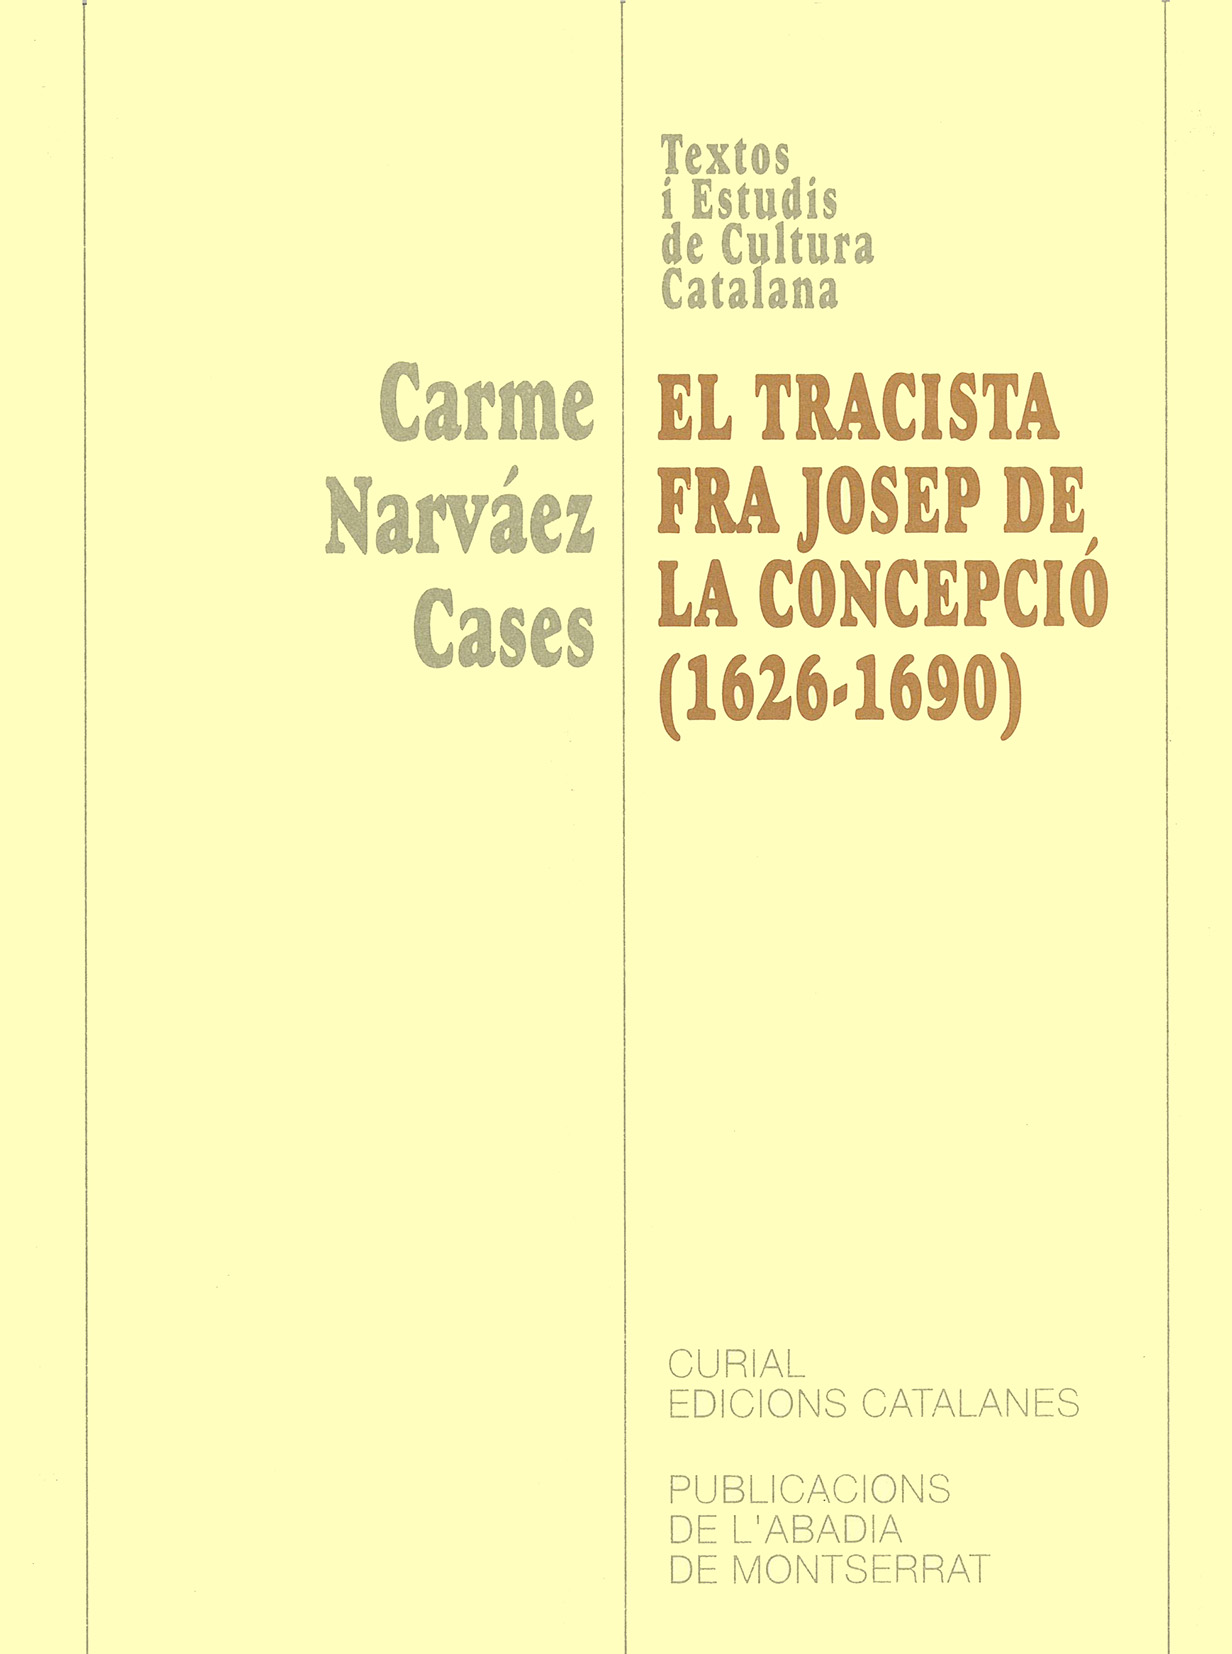 Carme Narváez Cases